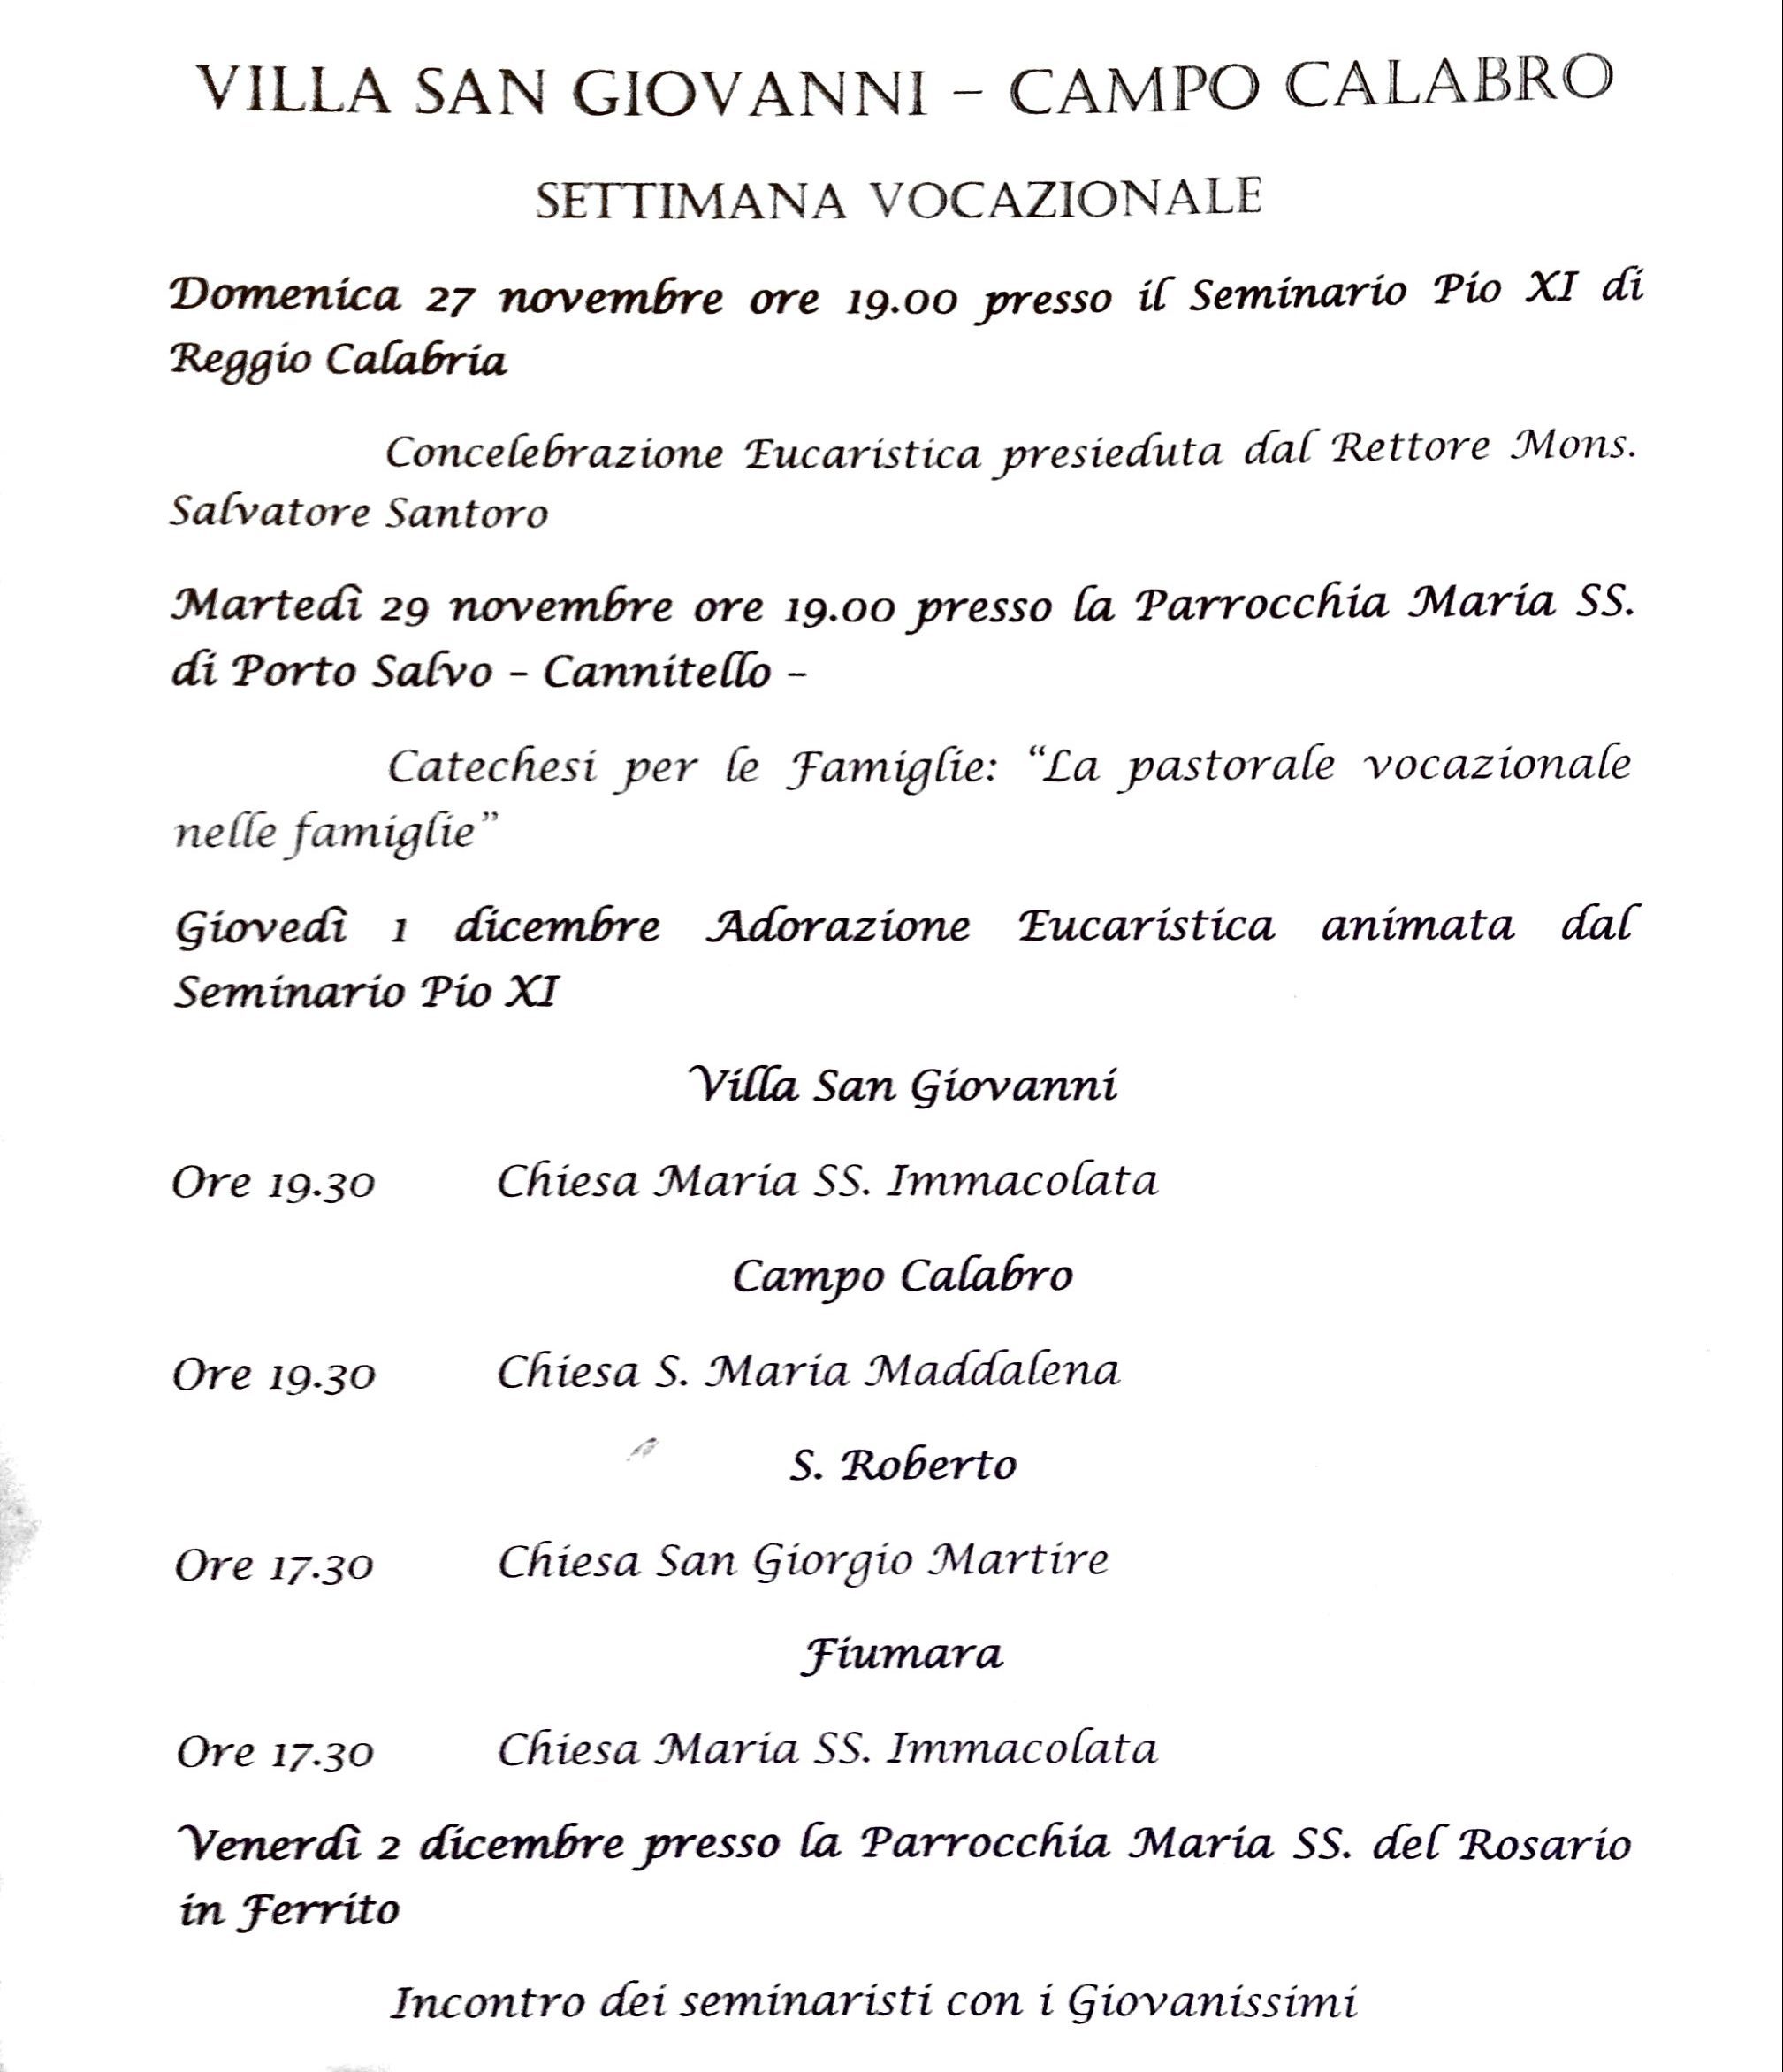 Settimana vocazionale, Villa S.Giovanni – Campo Calabro